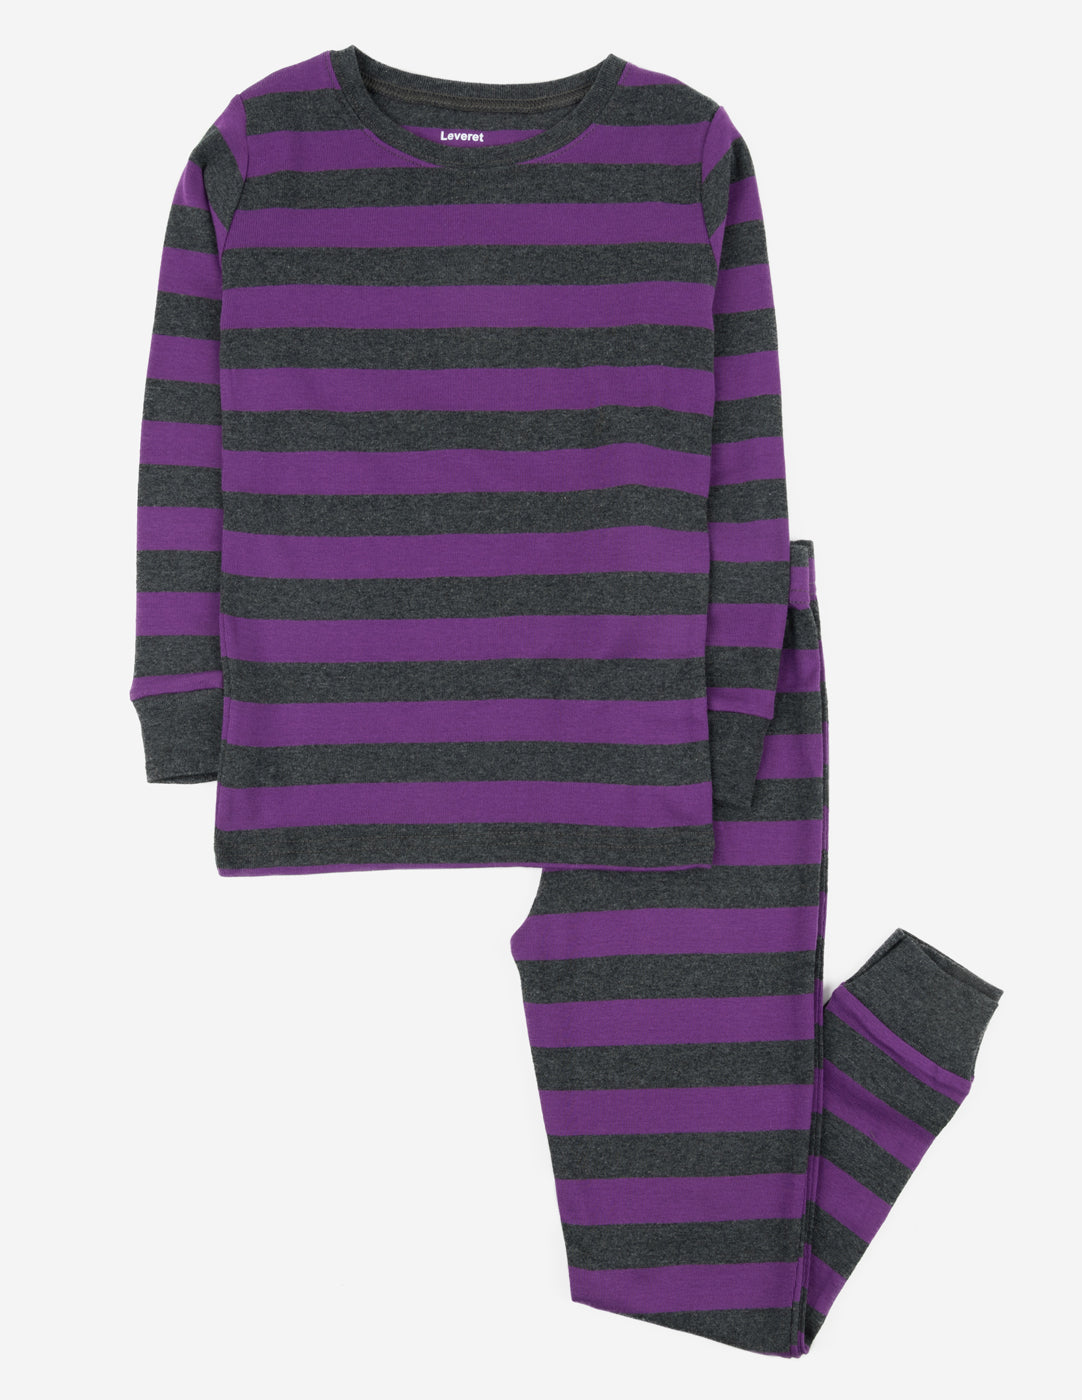 Tan and White Stripe Pajamas  Purple pajamas, Most comfortable pajamas,  Childrens fashion trends